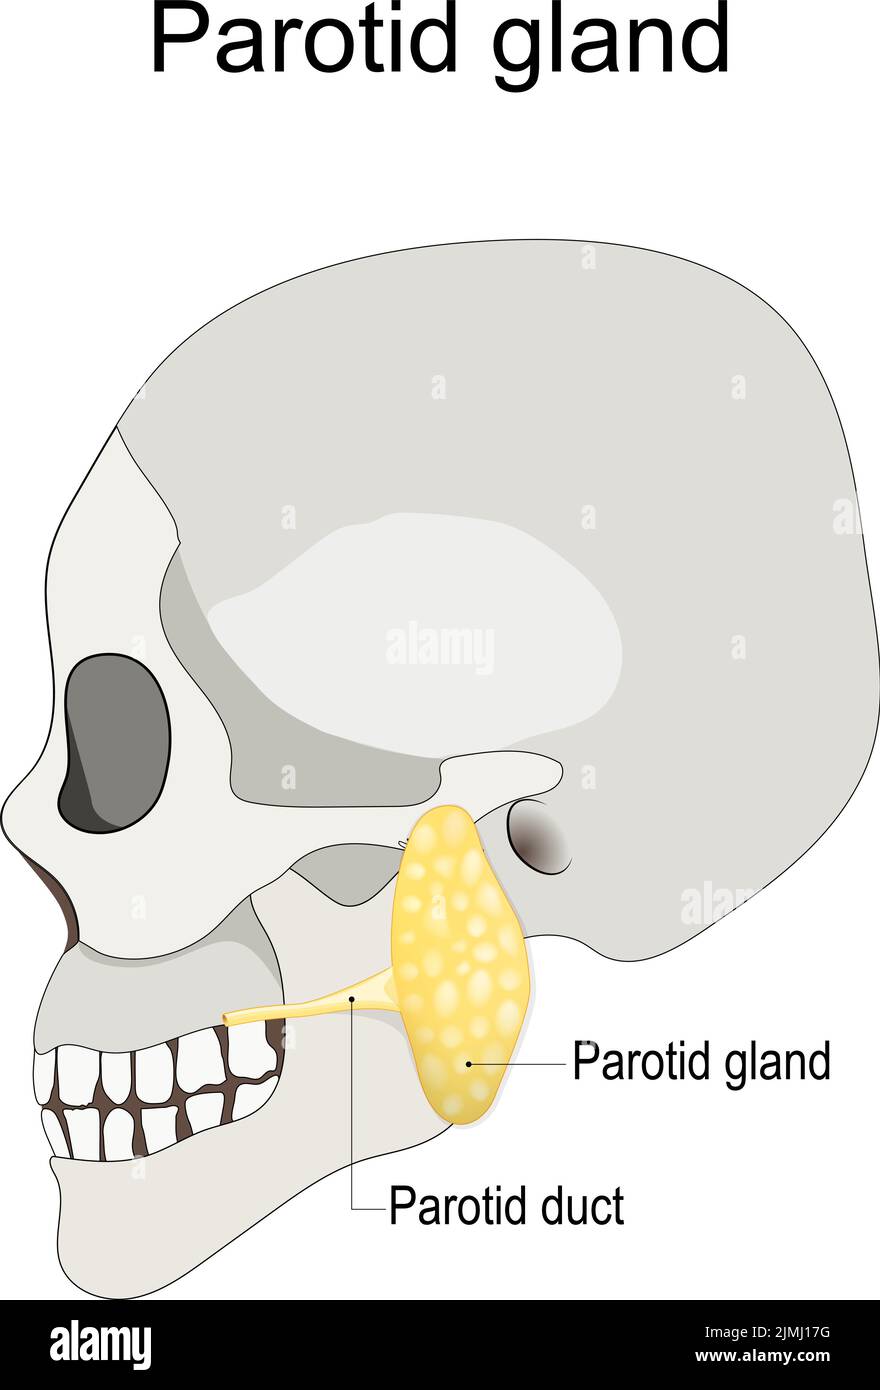 Posizione della ghiandola parotide sinistra nell'uomo. Cranio umano con ghiandola salivare e dotto parotideo. Illustrazione vettoriale Illustrazione Vettoriale